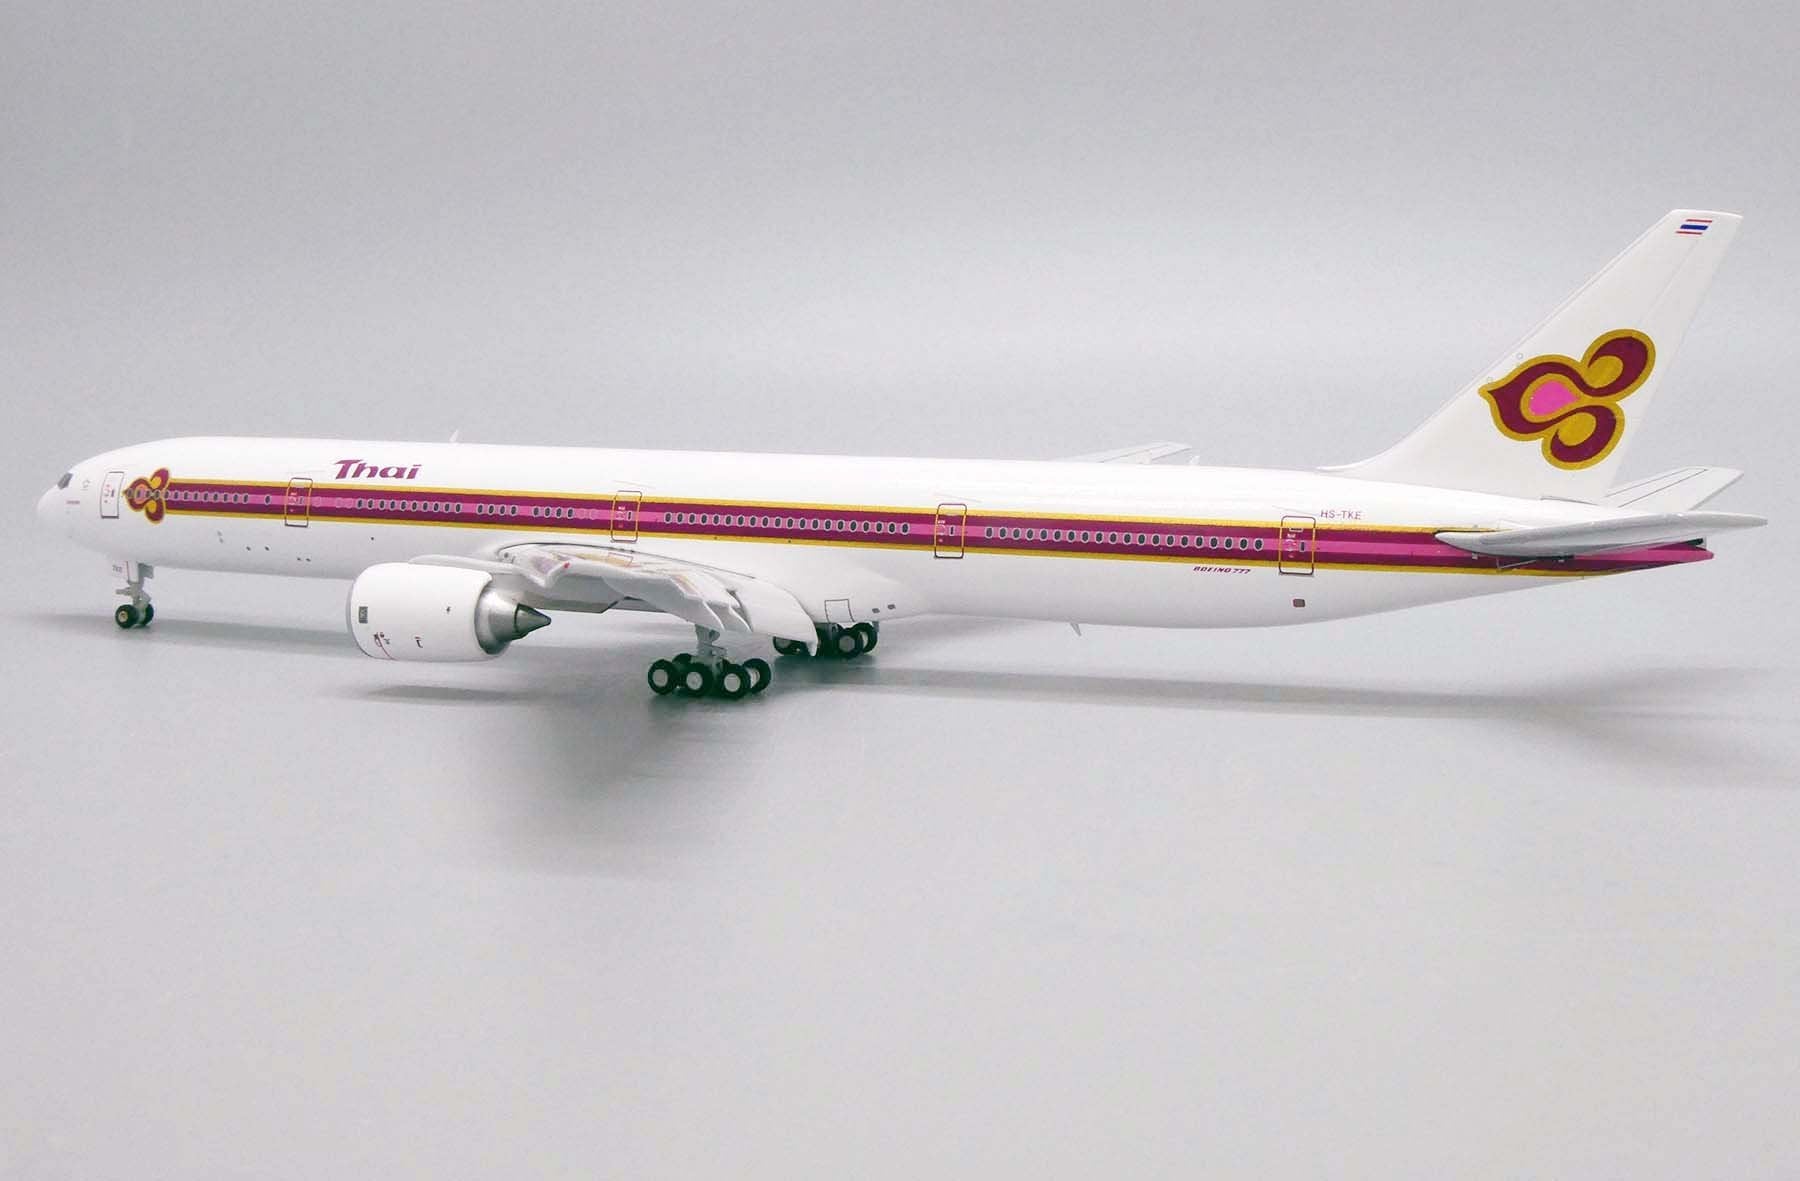 *1/400 Thai Airways B 777-300 “Old livery” *Flaps Down* JC Wings LH4THA172A